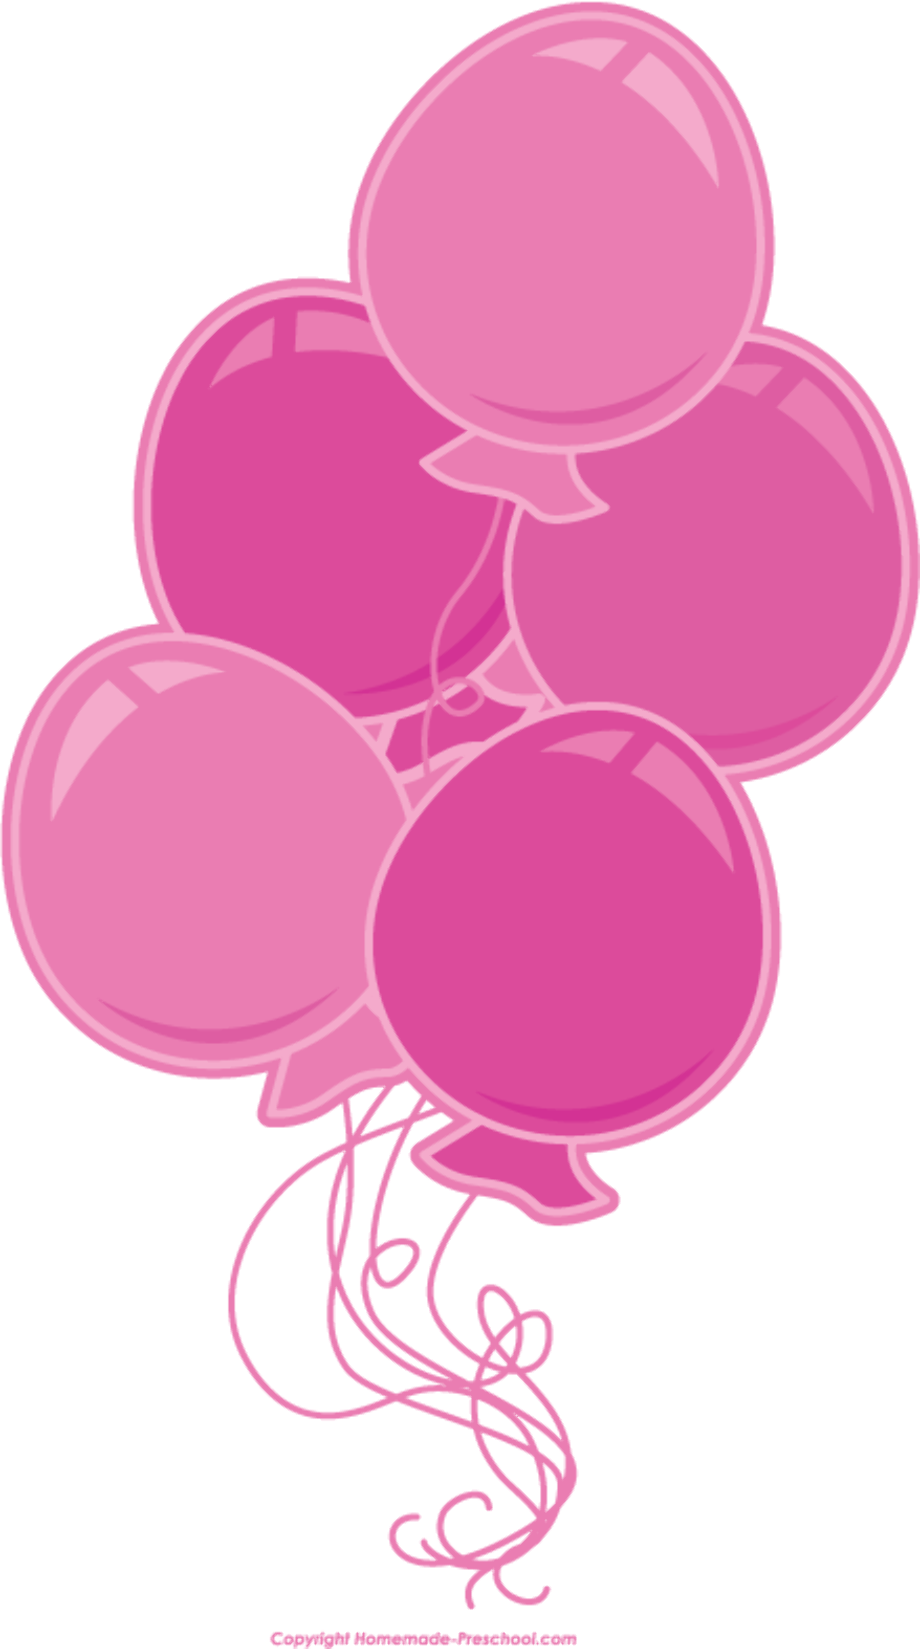 Balloon pink